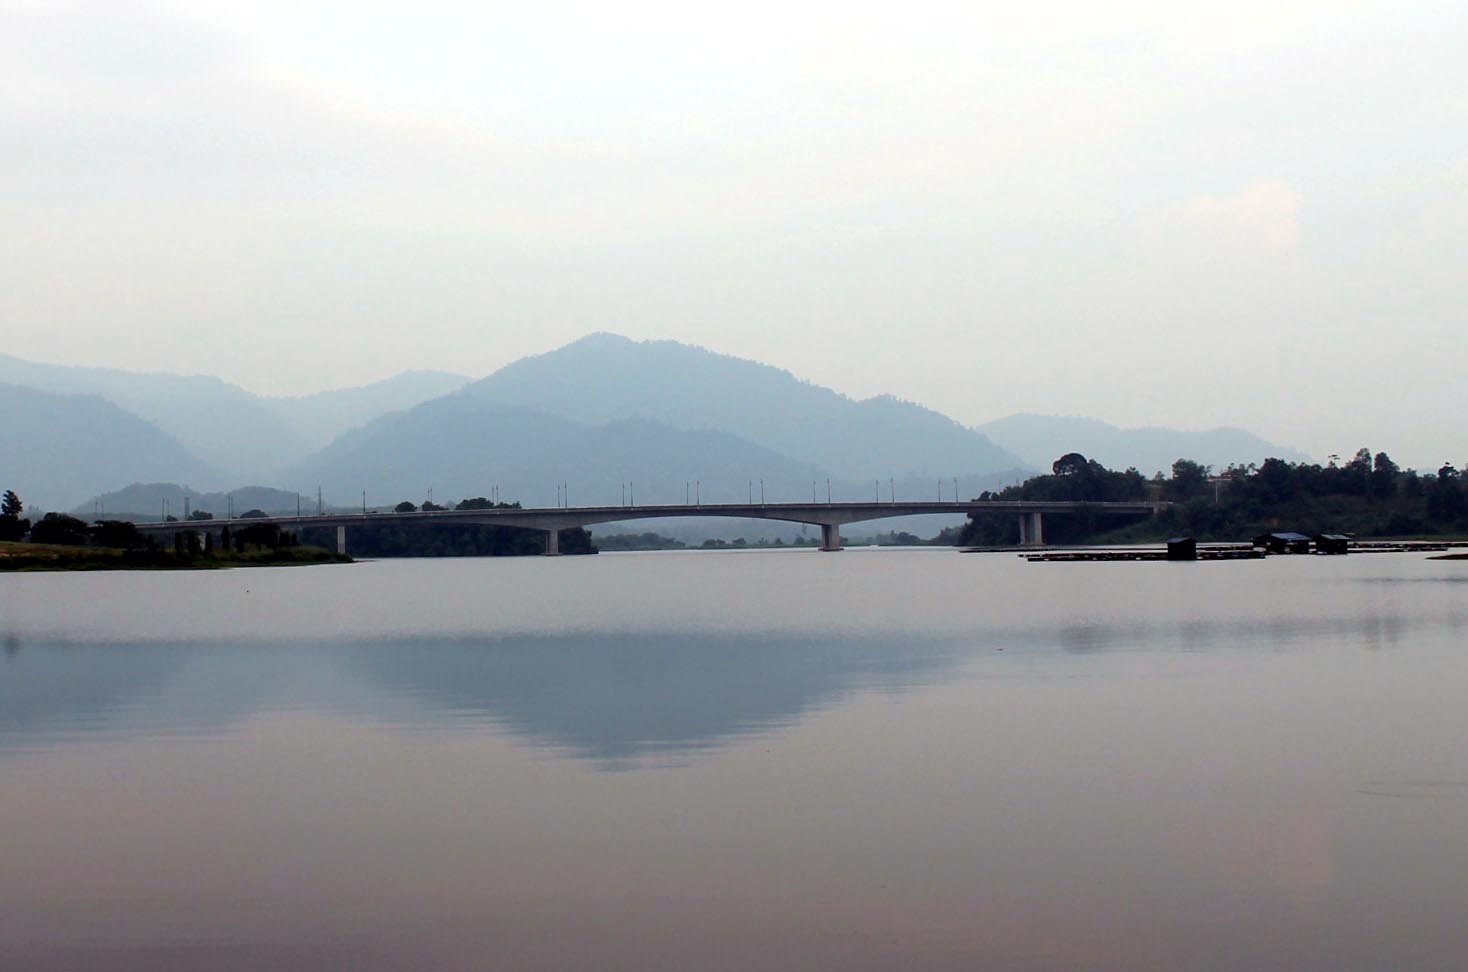 玲珑拉班湖建有一道雄伟大桥跨湖连接两岸，桥名为“王储纳兹林大桥”，即以现任霹雳州苏丹纳兹林沙担任王储时来命名。